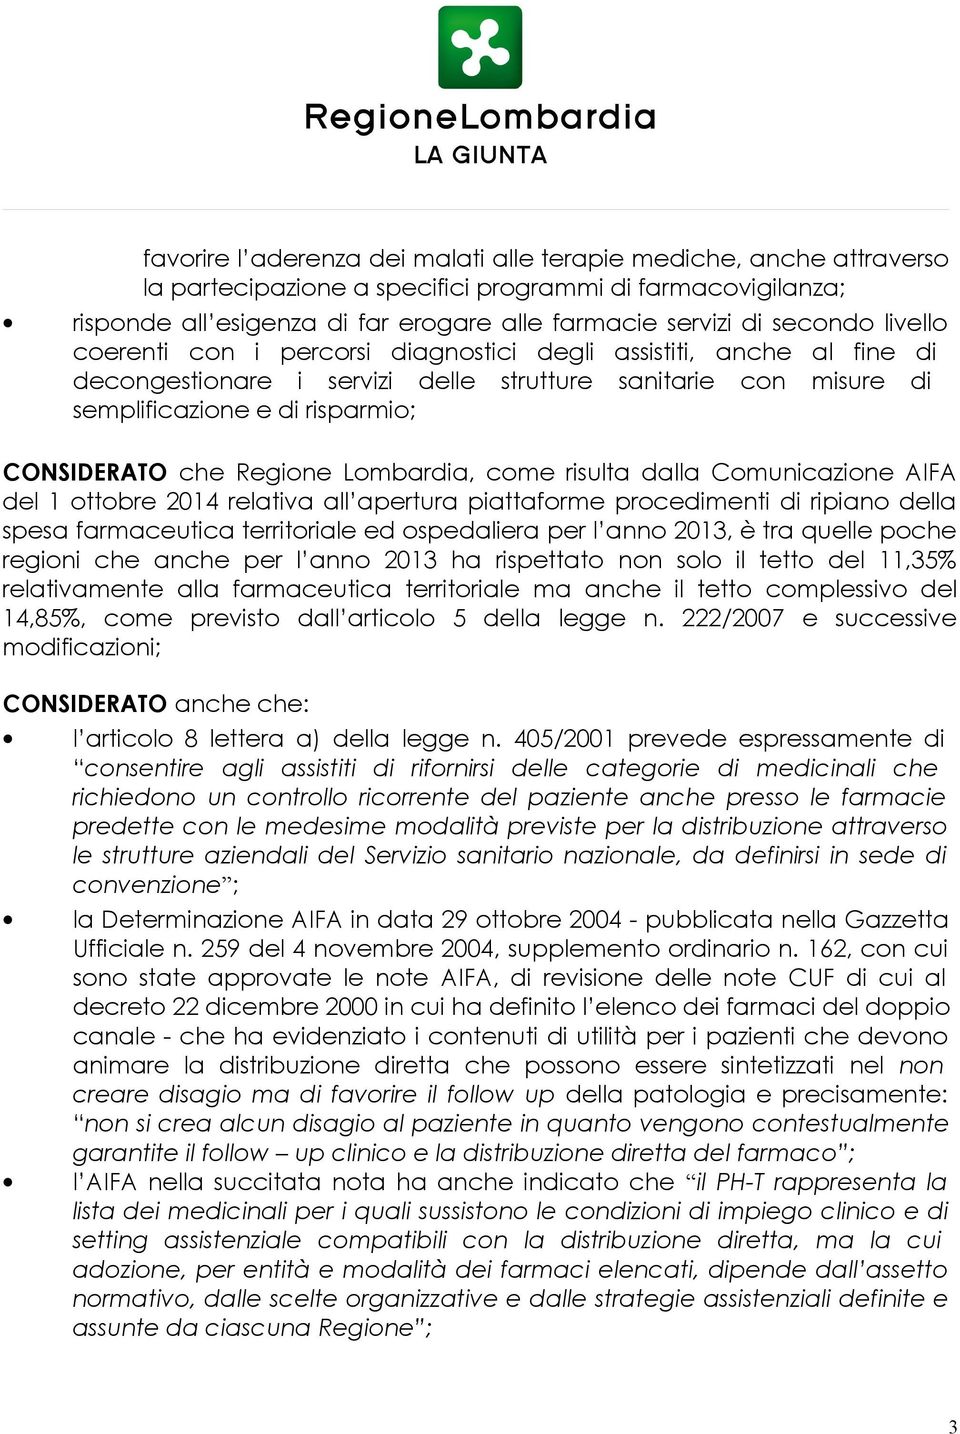 Regione Lombardia, come risulta dalla Comunicazione AIFA del 1 ottobre 2014 relativa all apertura piattaforme procedimenti di ripiano della spesa farmaceutica territoriale ed ospedaliera per l anno